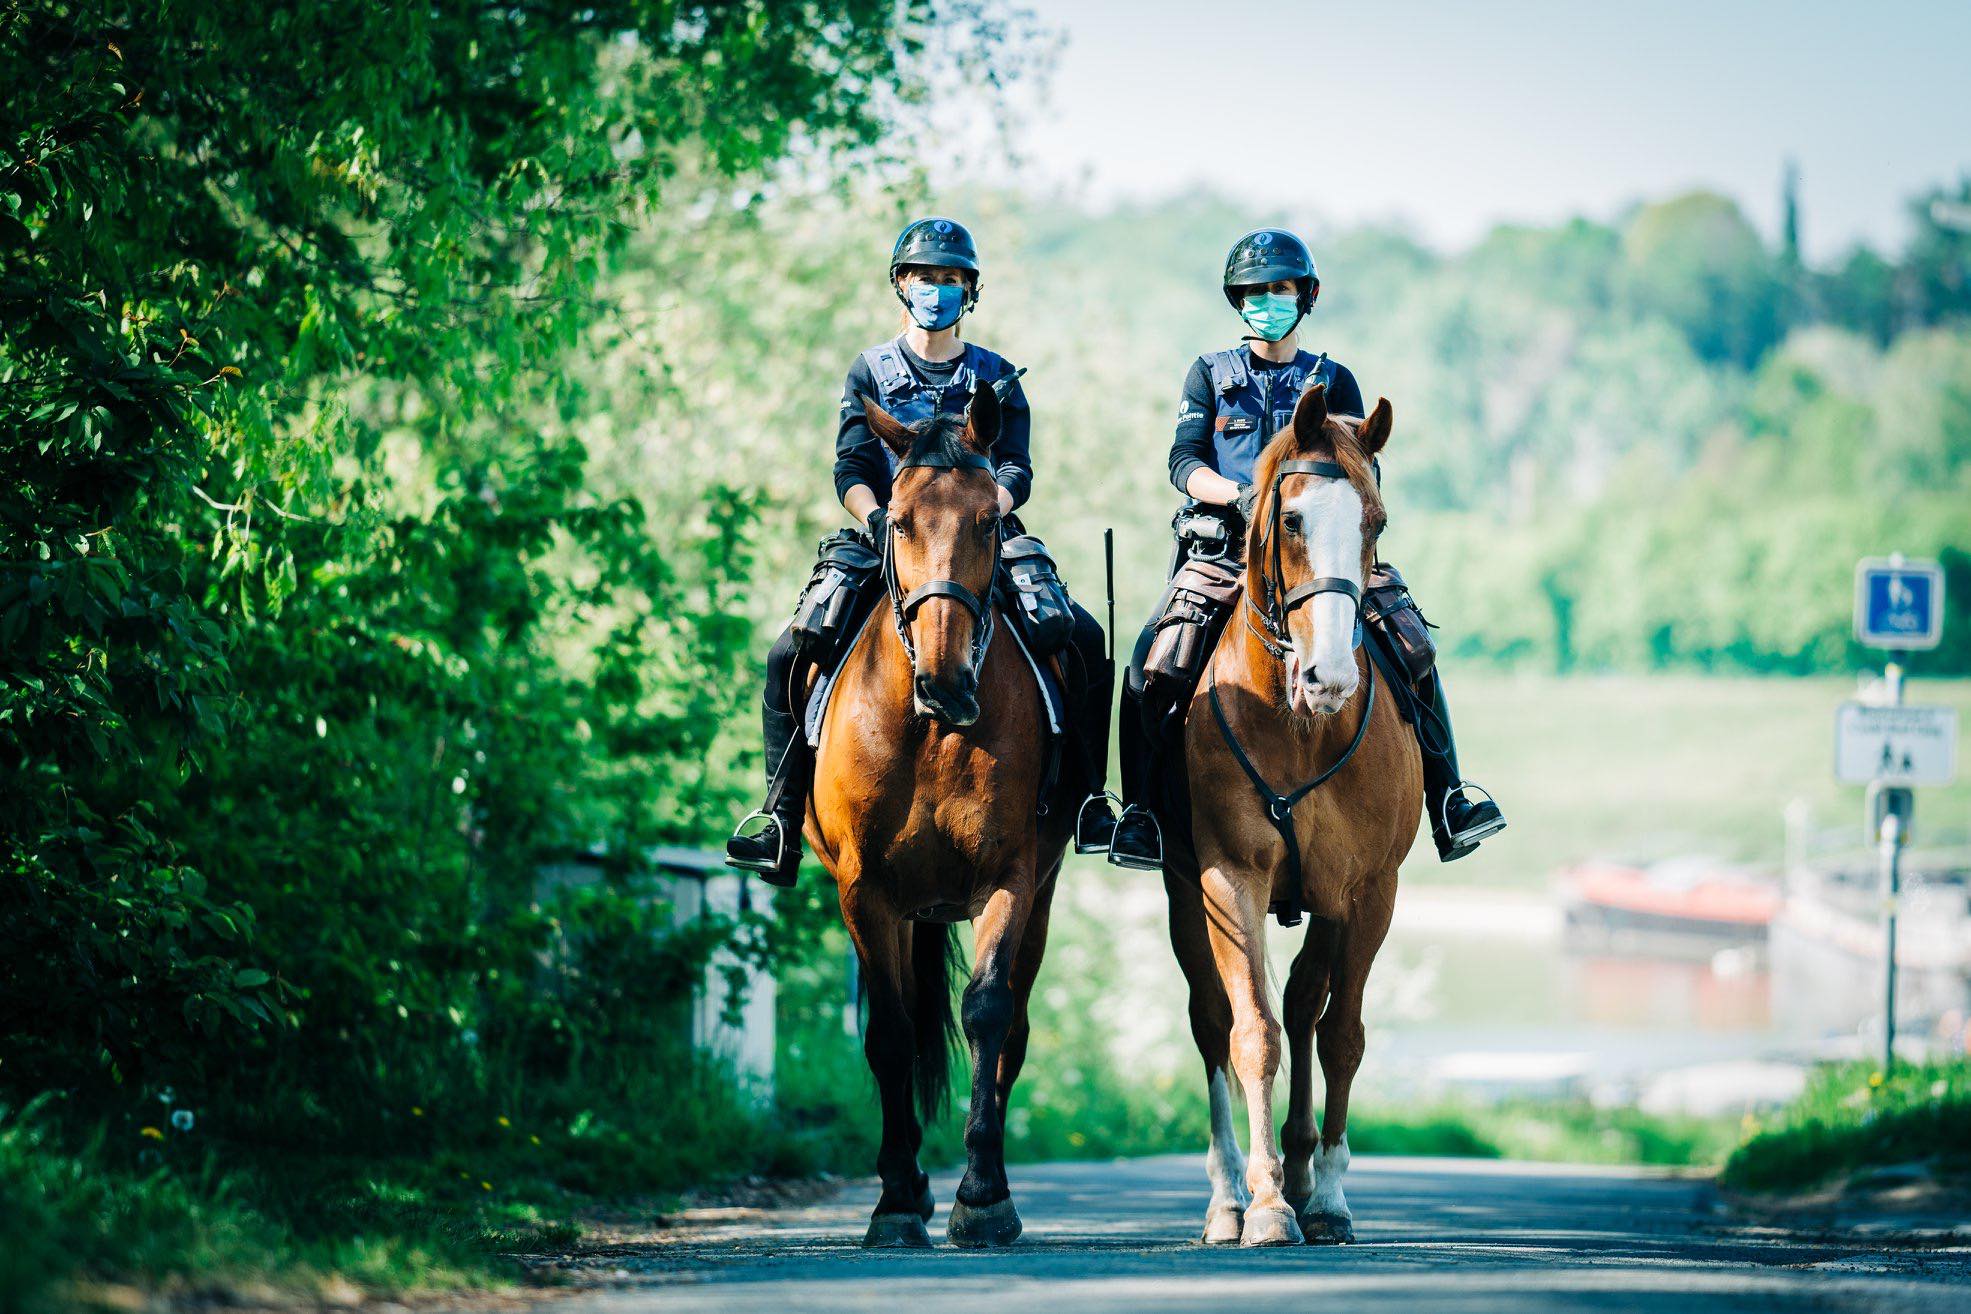 Petitie tegen gebruik van politiepaarden heeft al 25.000 handtekeningen